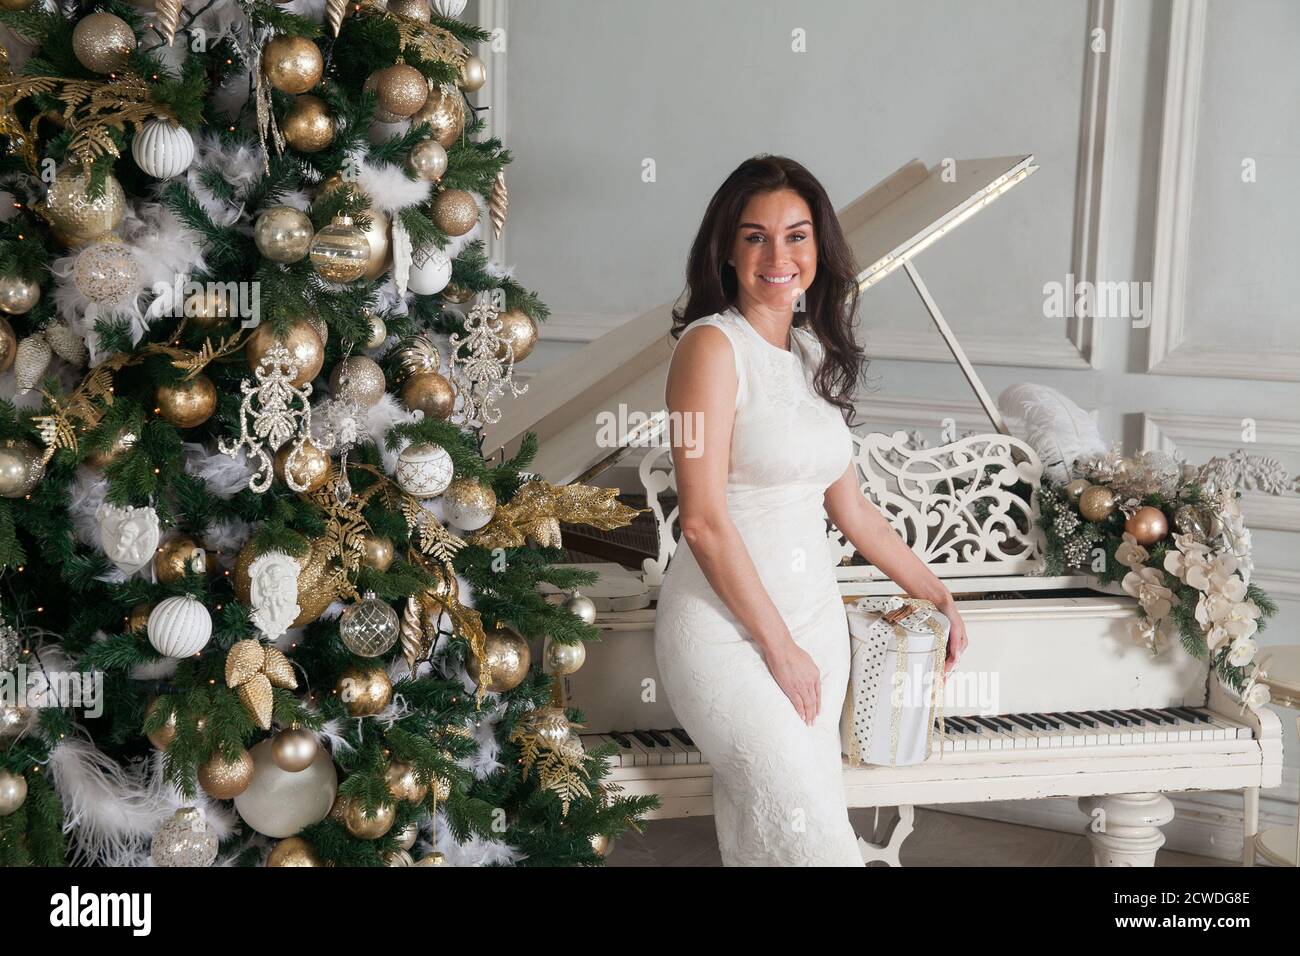 Joyeux Noël et joyeuses fêtes. Belle jeune femme brune en robe blanche de  soirée à cocktail posant avec un piano blanc et décorée Noël Photo Stock -  Alamy